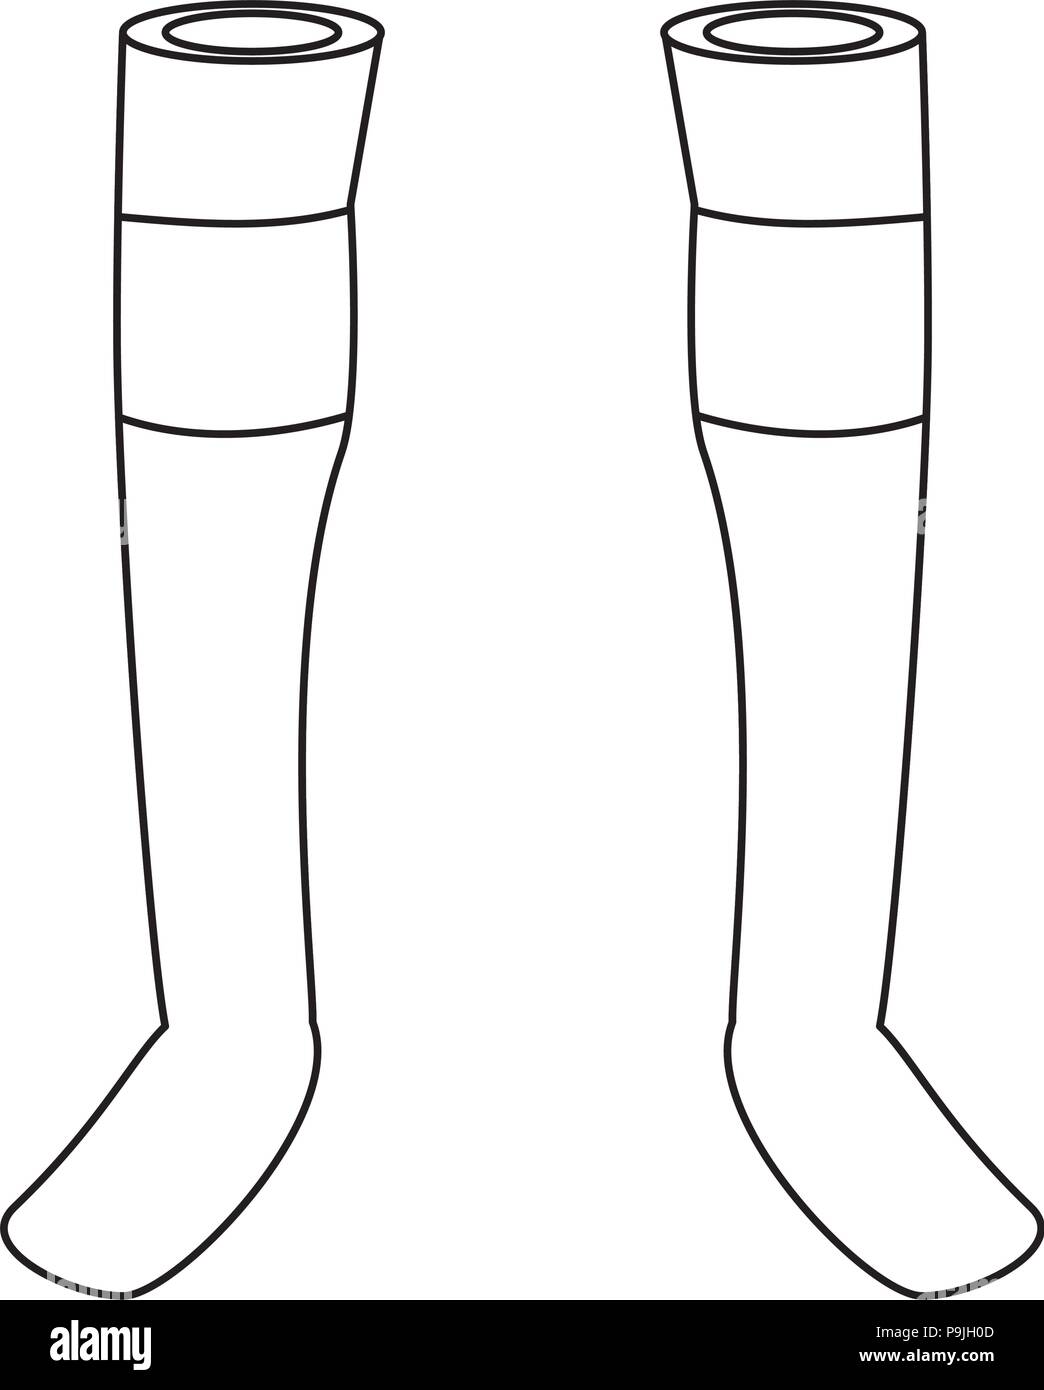 soccer socks icon over white background, vector illustration Stock Vector